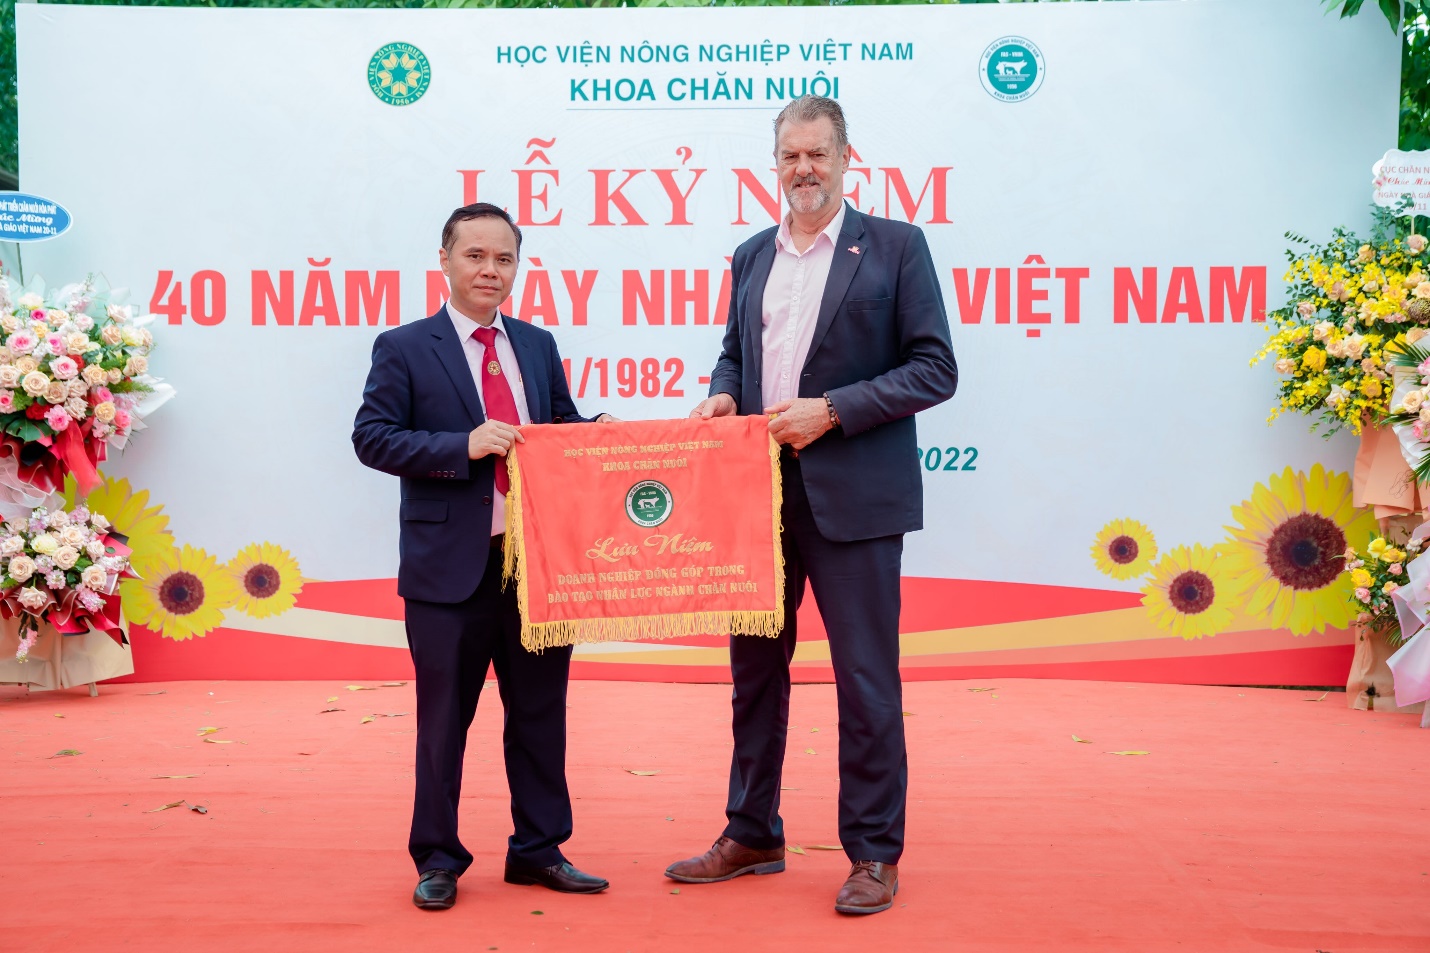 Mavin đóng góp nhiều trong đào tạo nhân lực ngành Chăn nuôi Việt Nam - Ảnh 1.